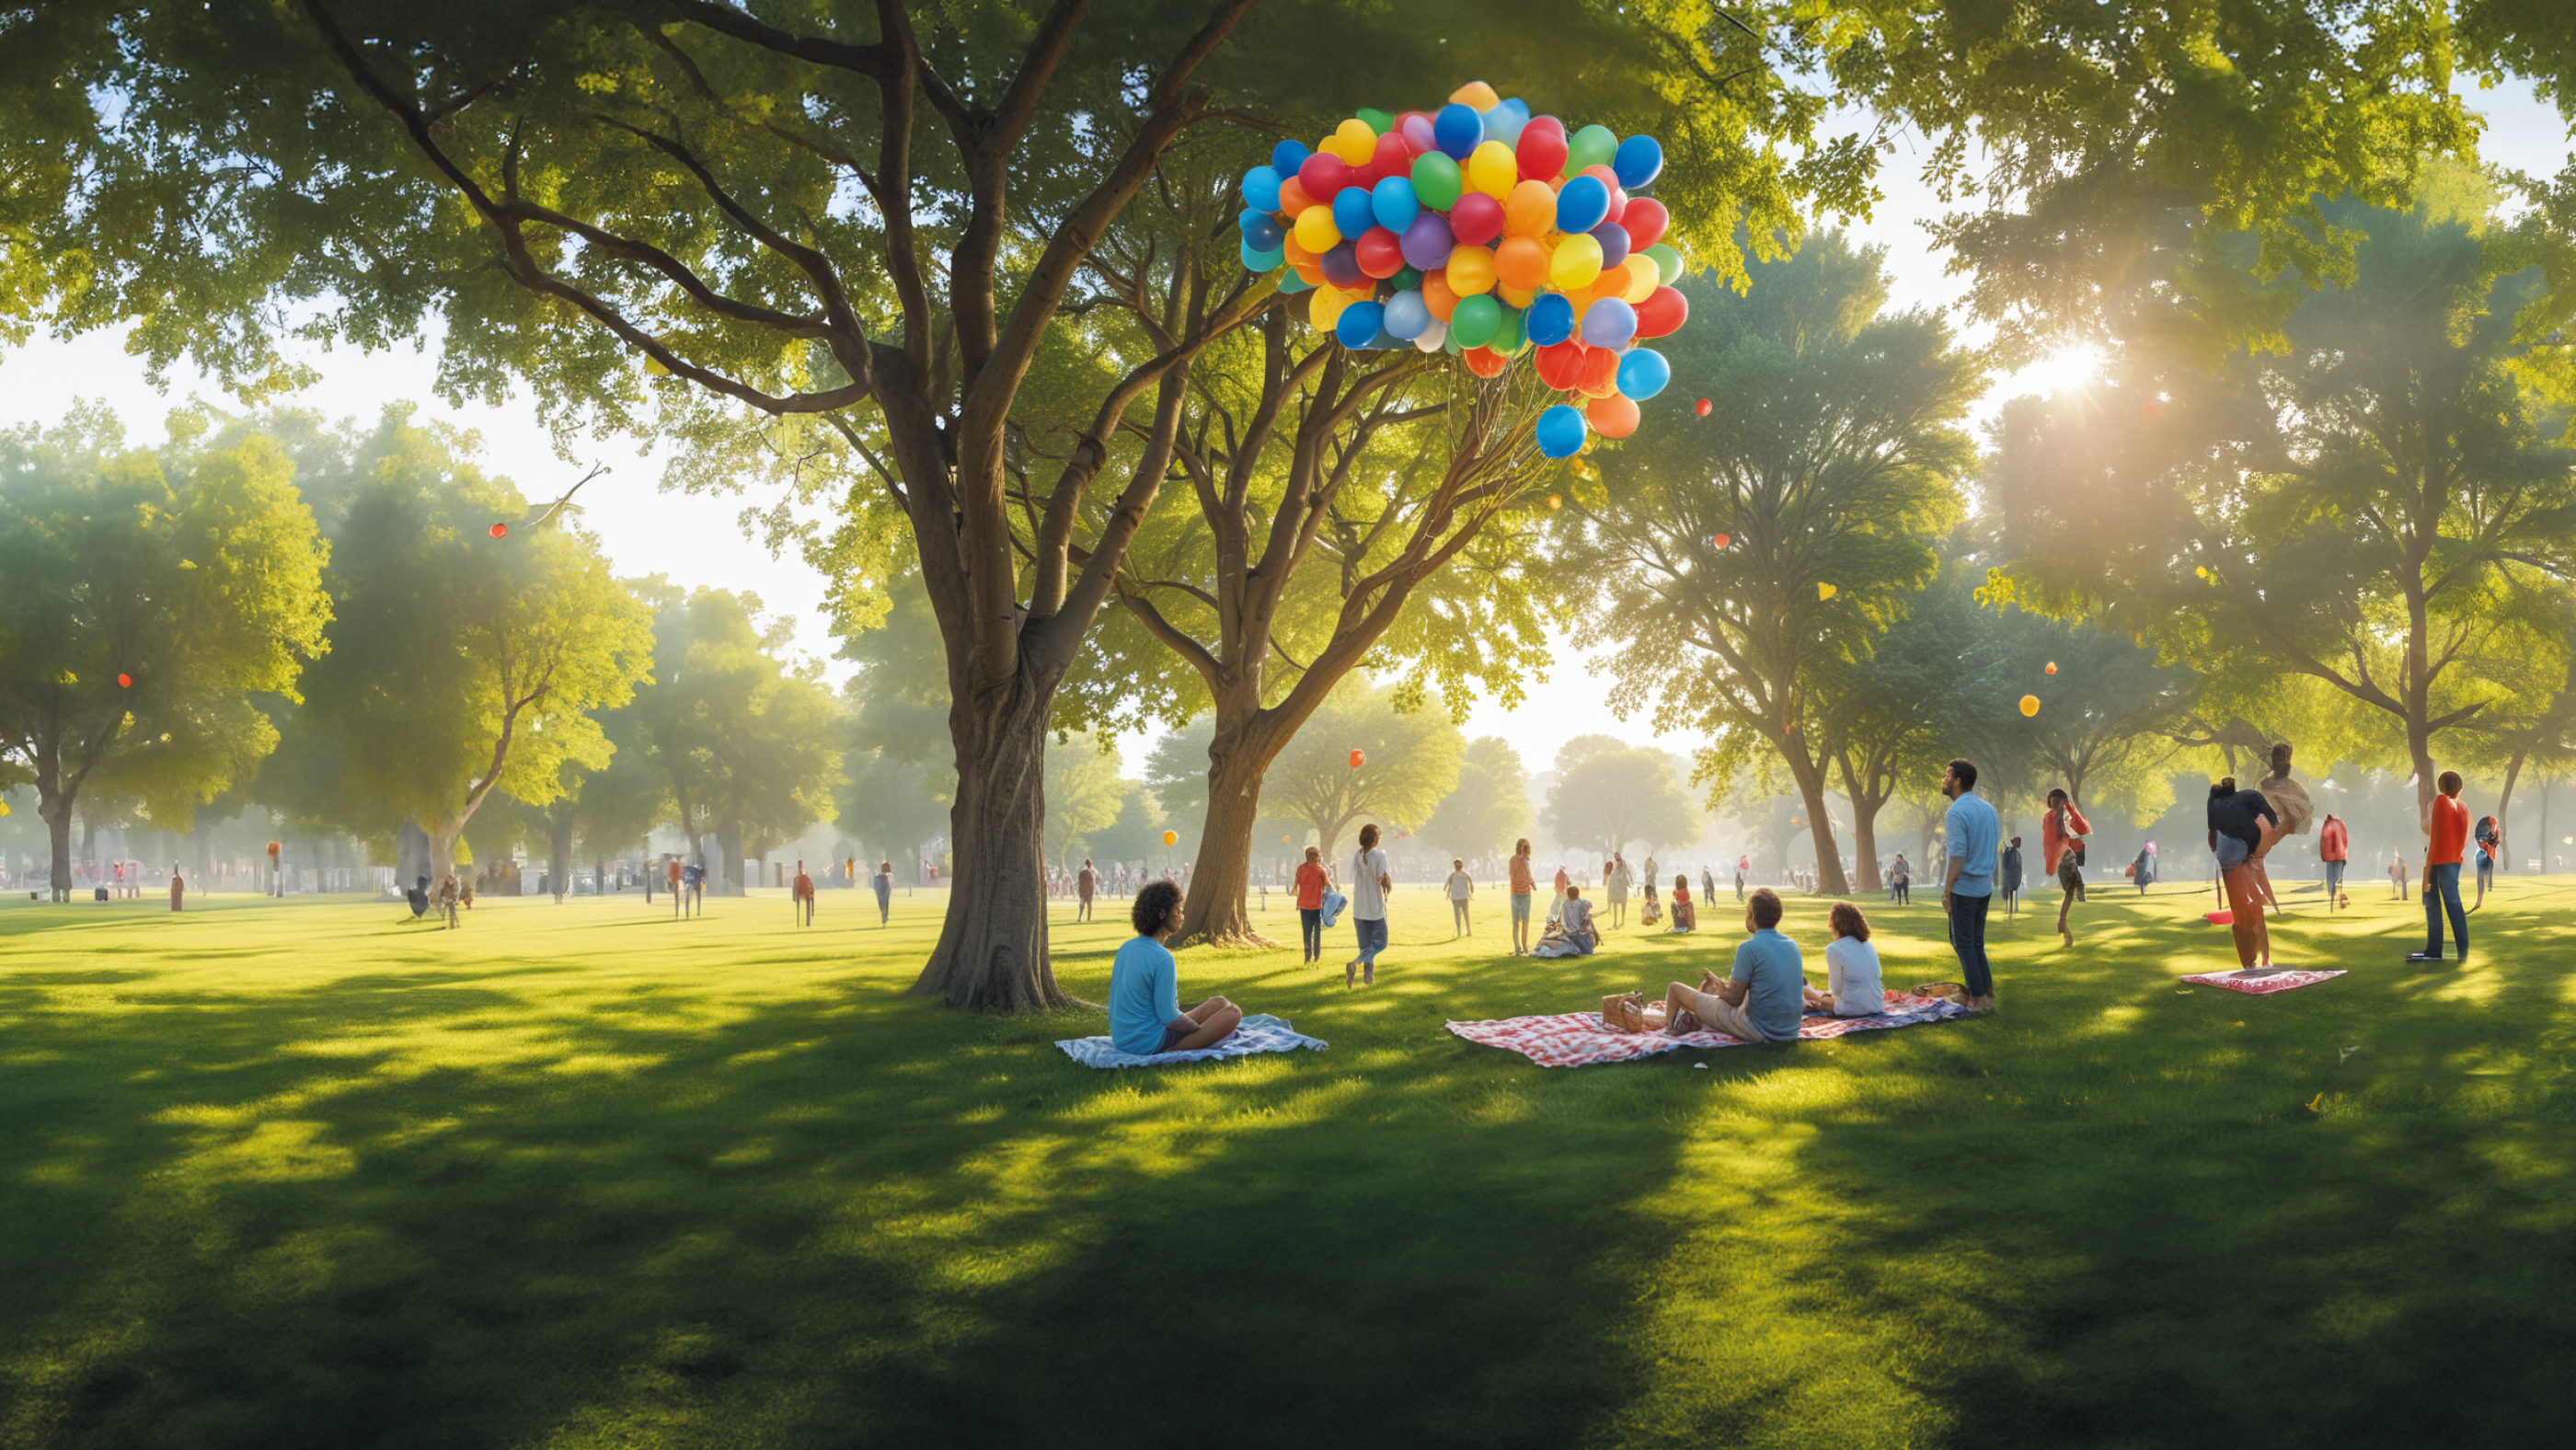 Molte persone siedono su coperte da picnic in un parco verde con grandi alberi e guardano i palloncini nel cielo.